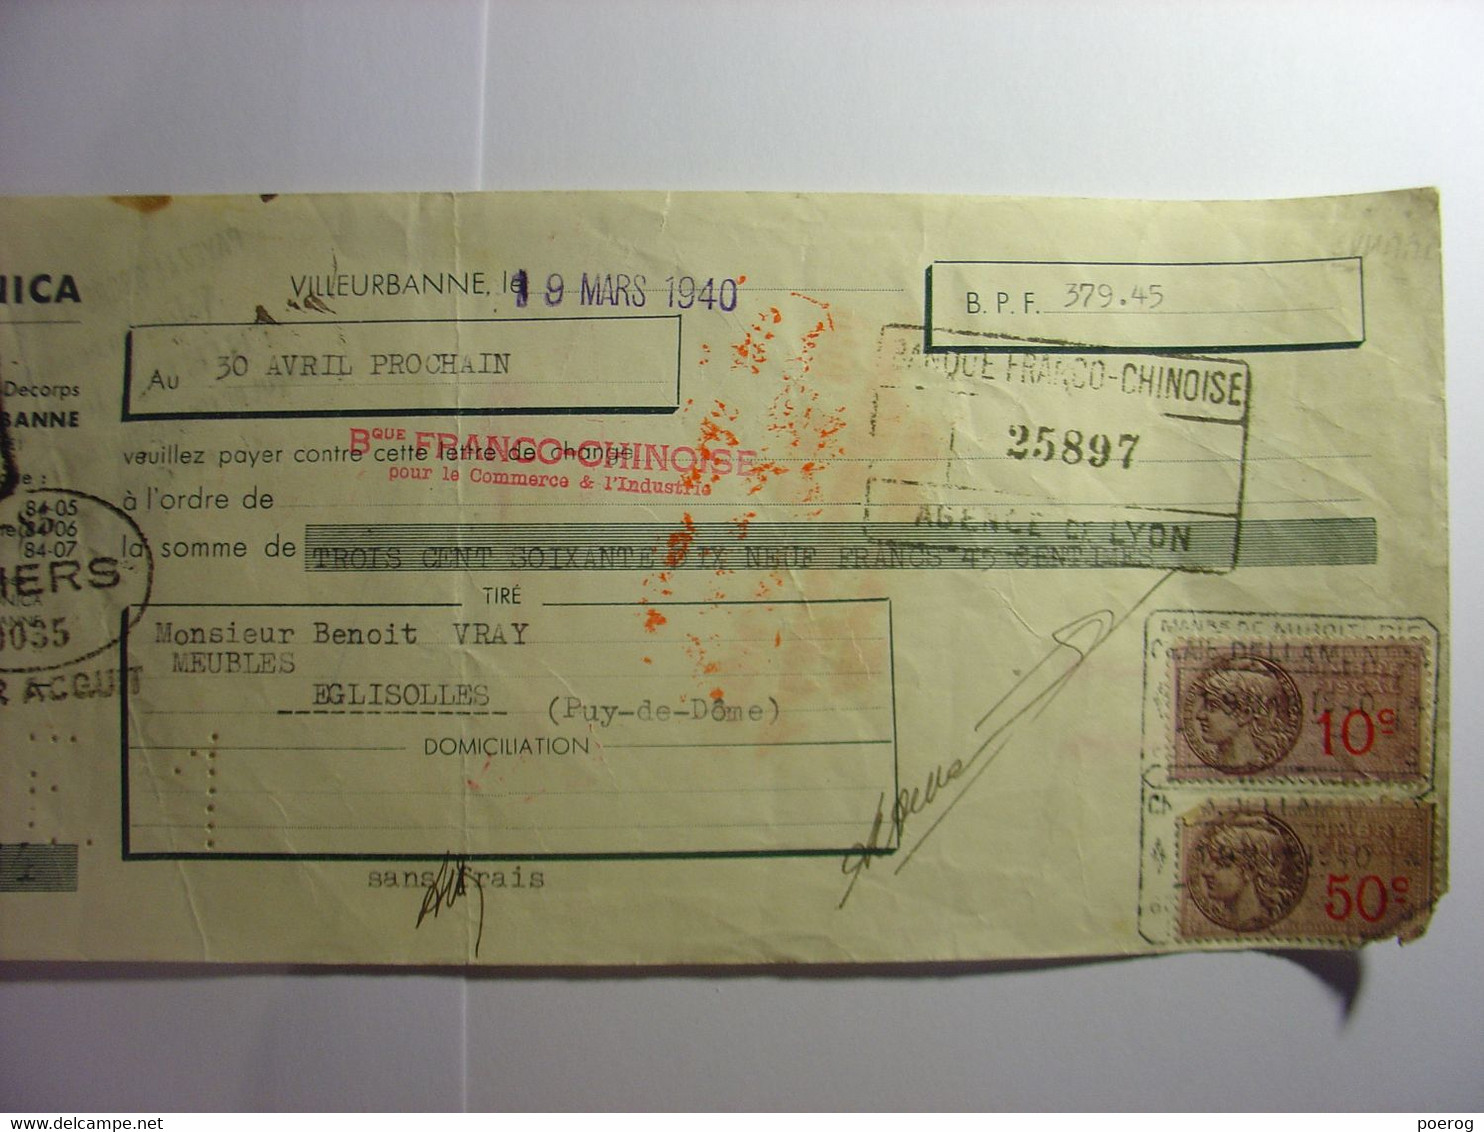 MANDAT LETTRE DE CHANGE CHEQUE De 1940 DELLAMONICA BENOIT VRAY EGLISOLES VILLEURBANNE THIERS BANQUE FRANCO CHINOISE LION - Bills Of Exchange